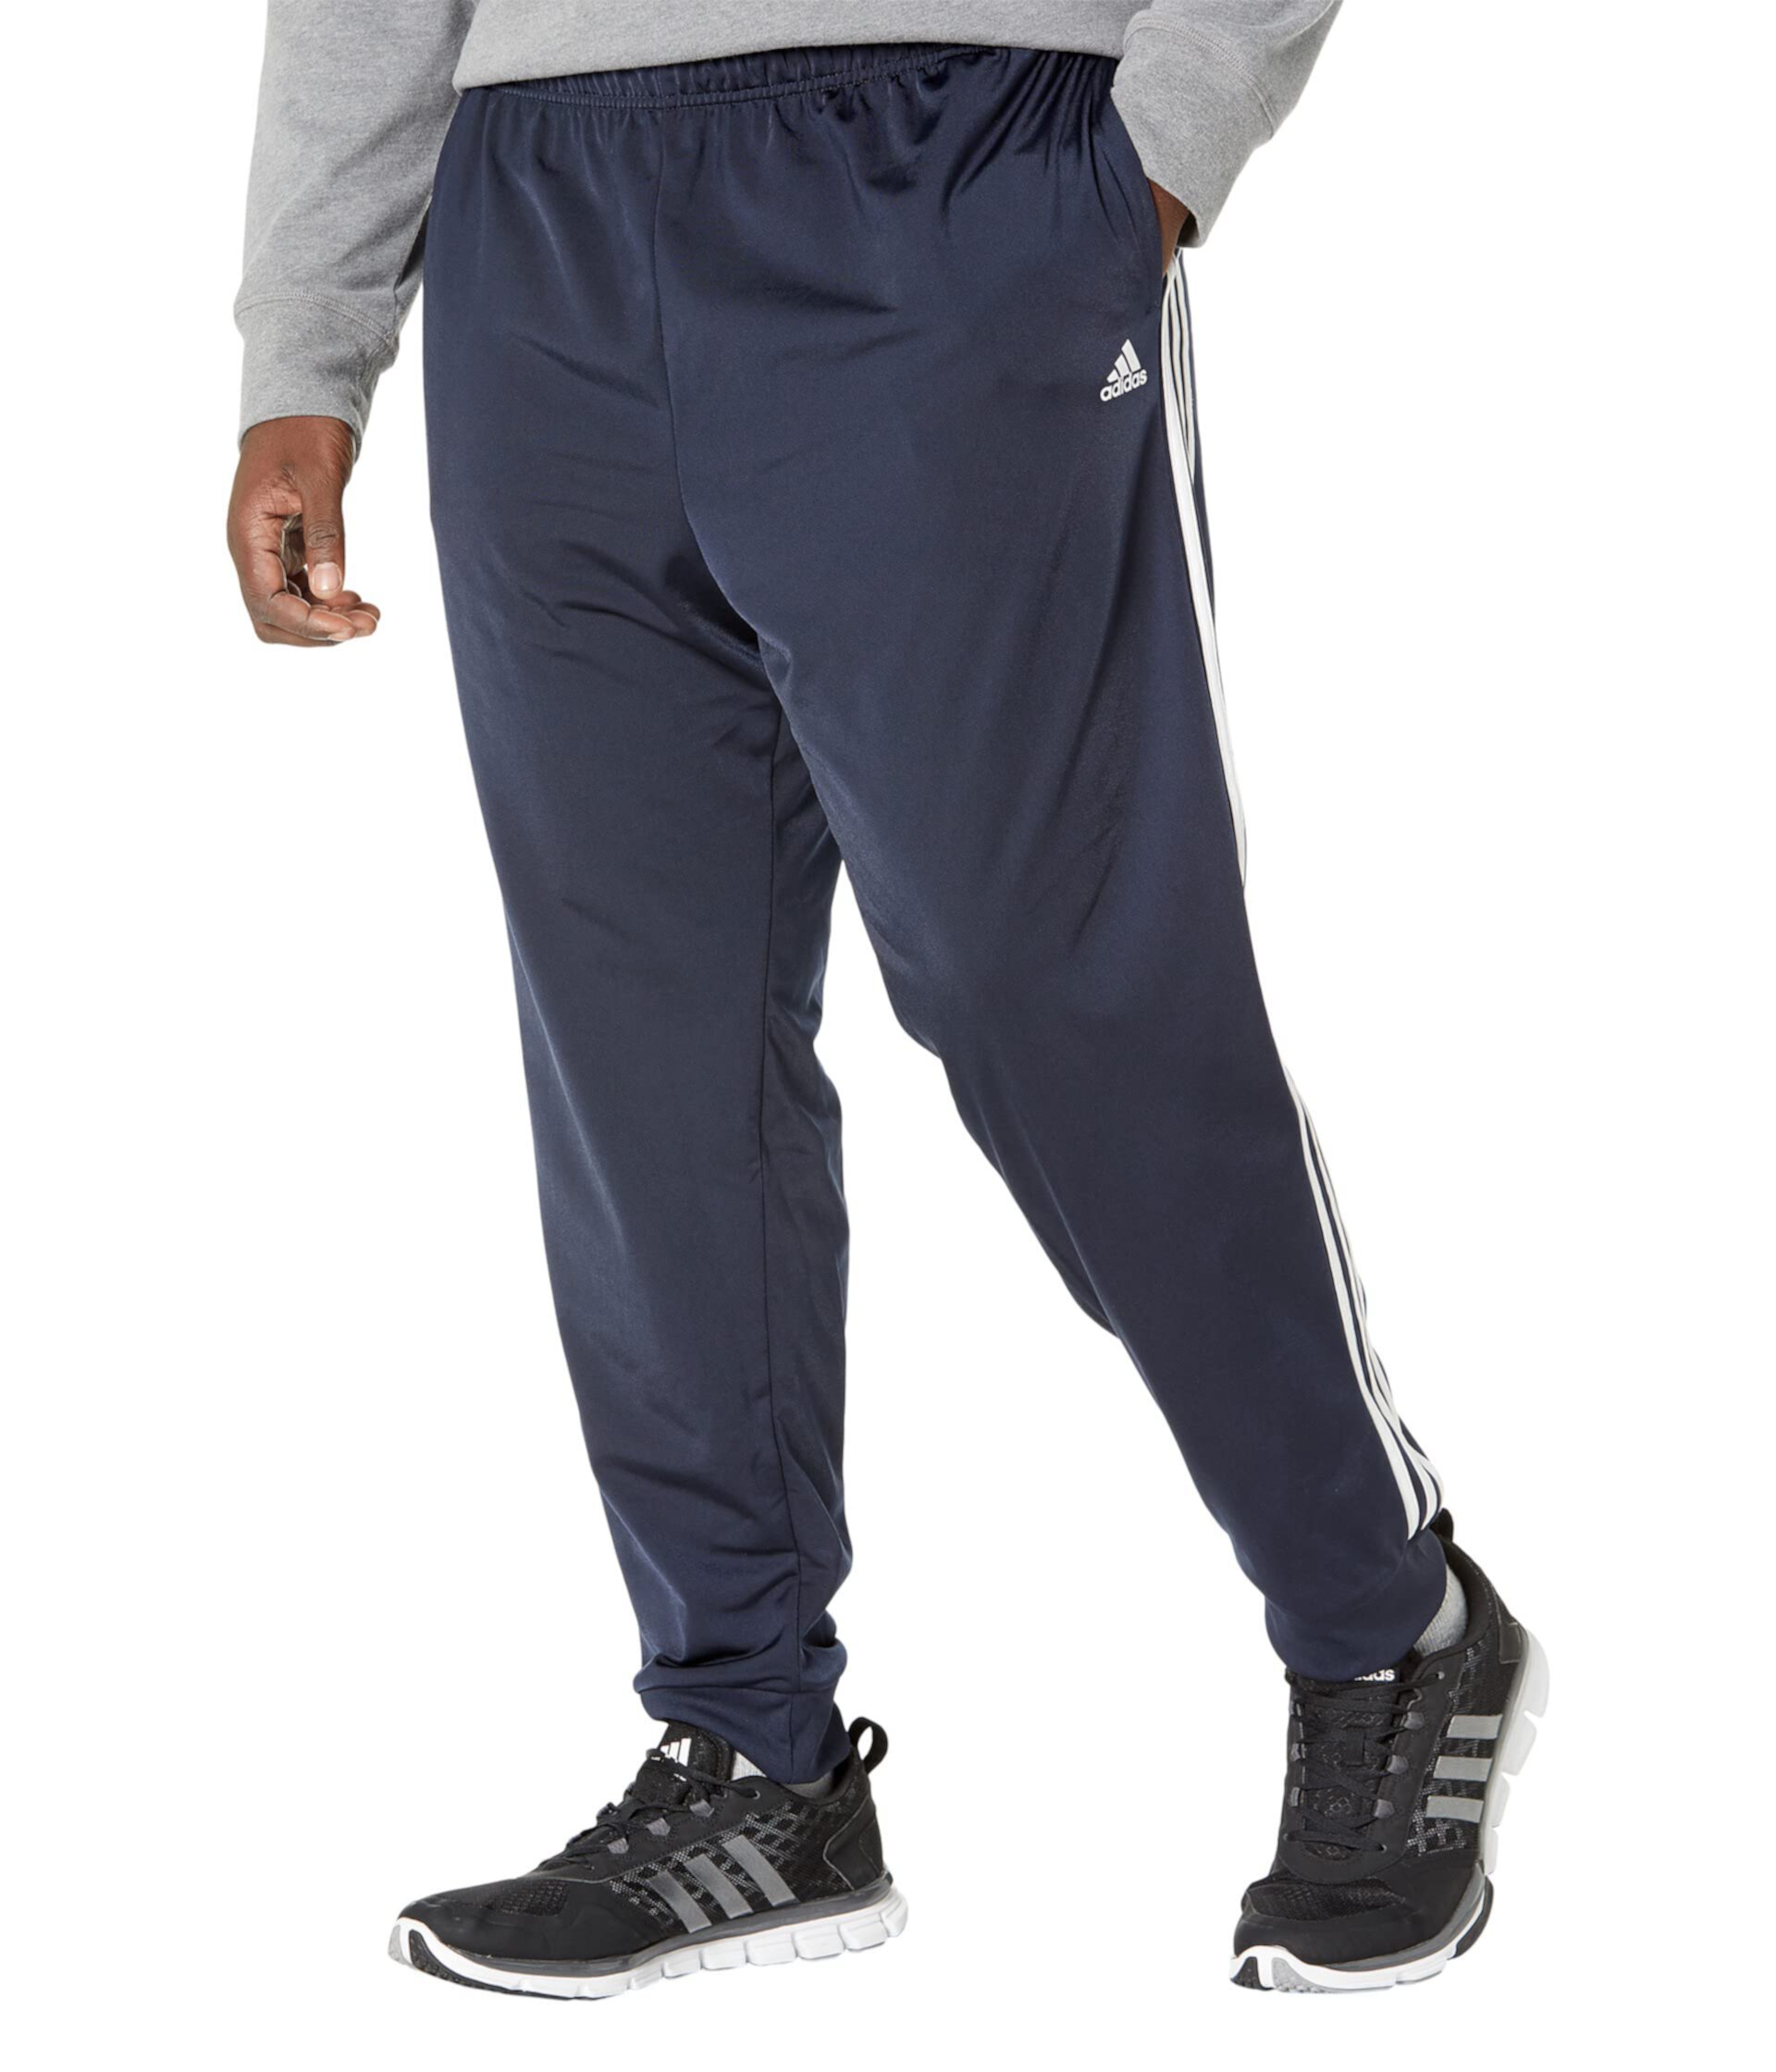 Трикотажные брюки-джоггеры с 3 полосками Big & Tall Essentials Adidas